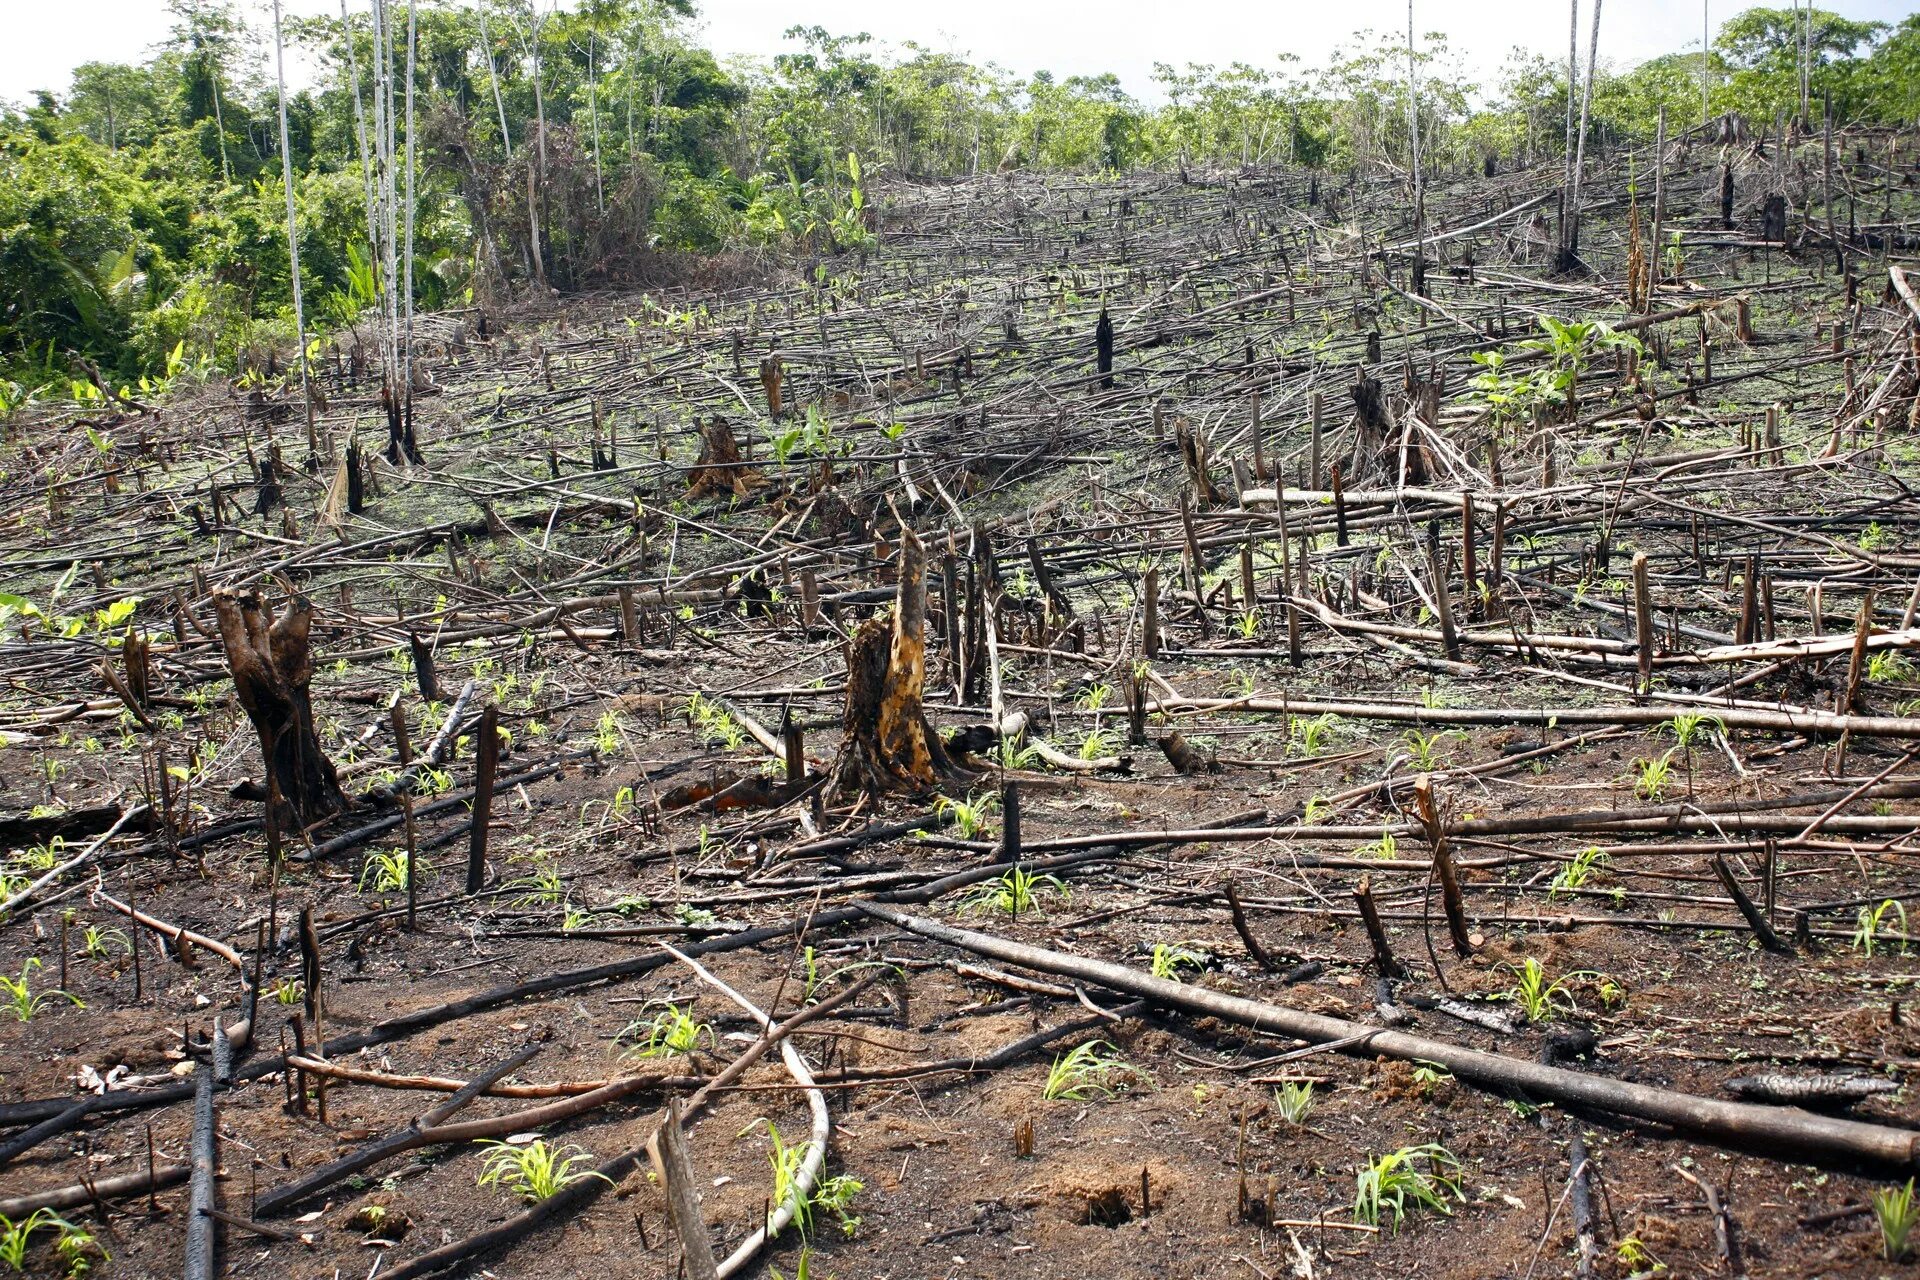 Cut down plant. Вырубка тропических лесов. Вырубка лесов Амазонии. Уничтожение тропических лесов. Хищническая вырубка лесов.